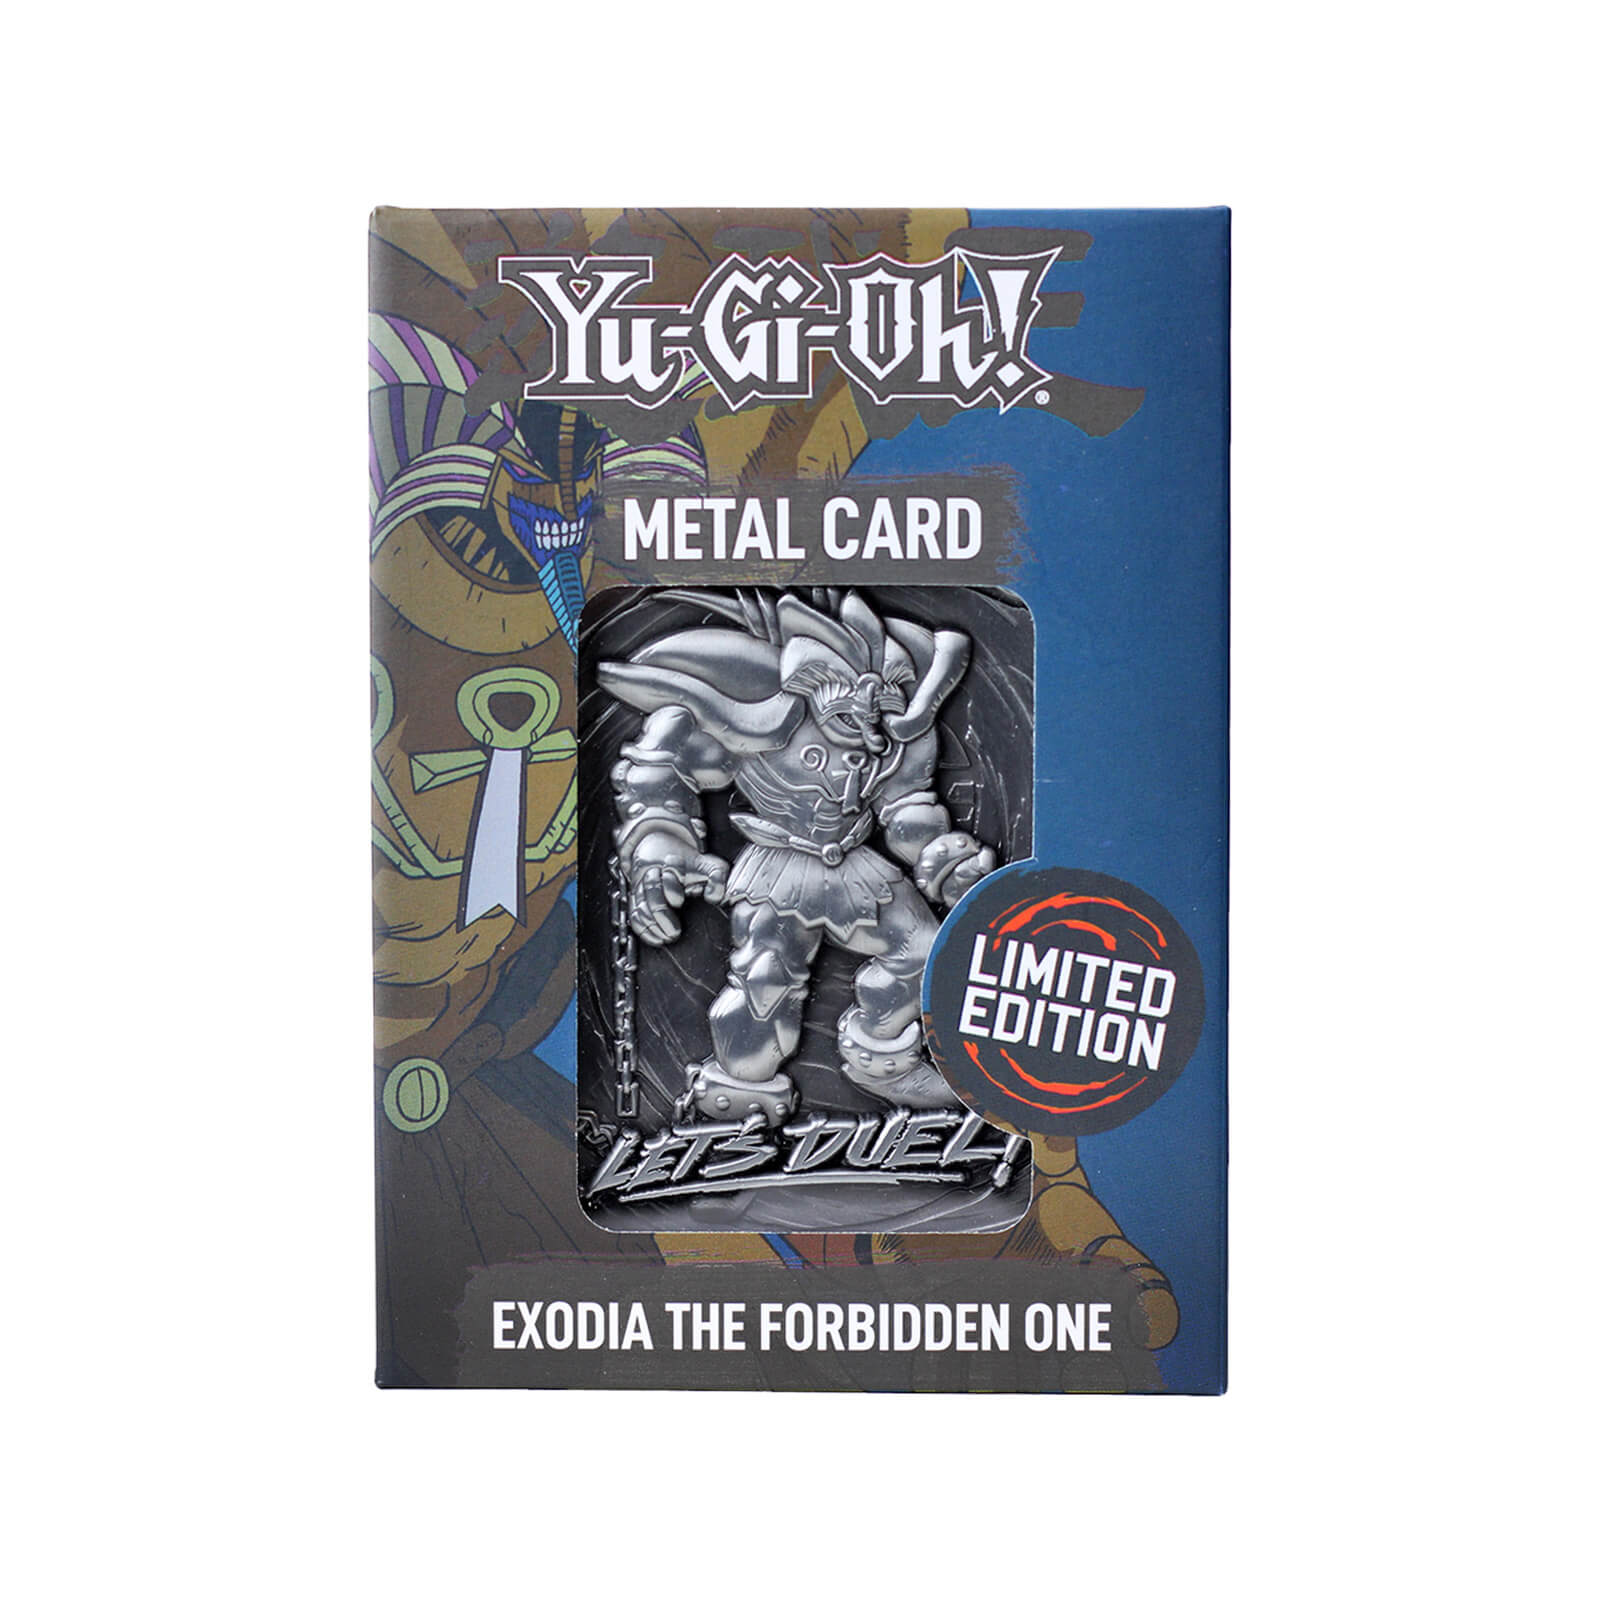 Image of Yu-Gi-Oh! Exodia Premium Limited Edition Ingot